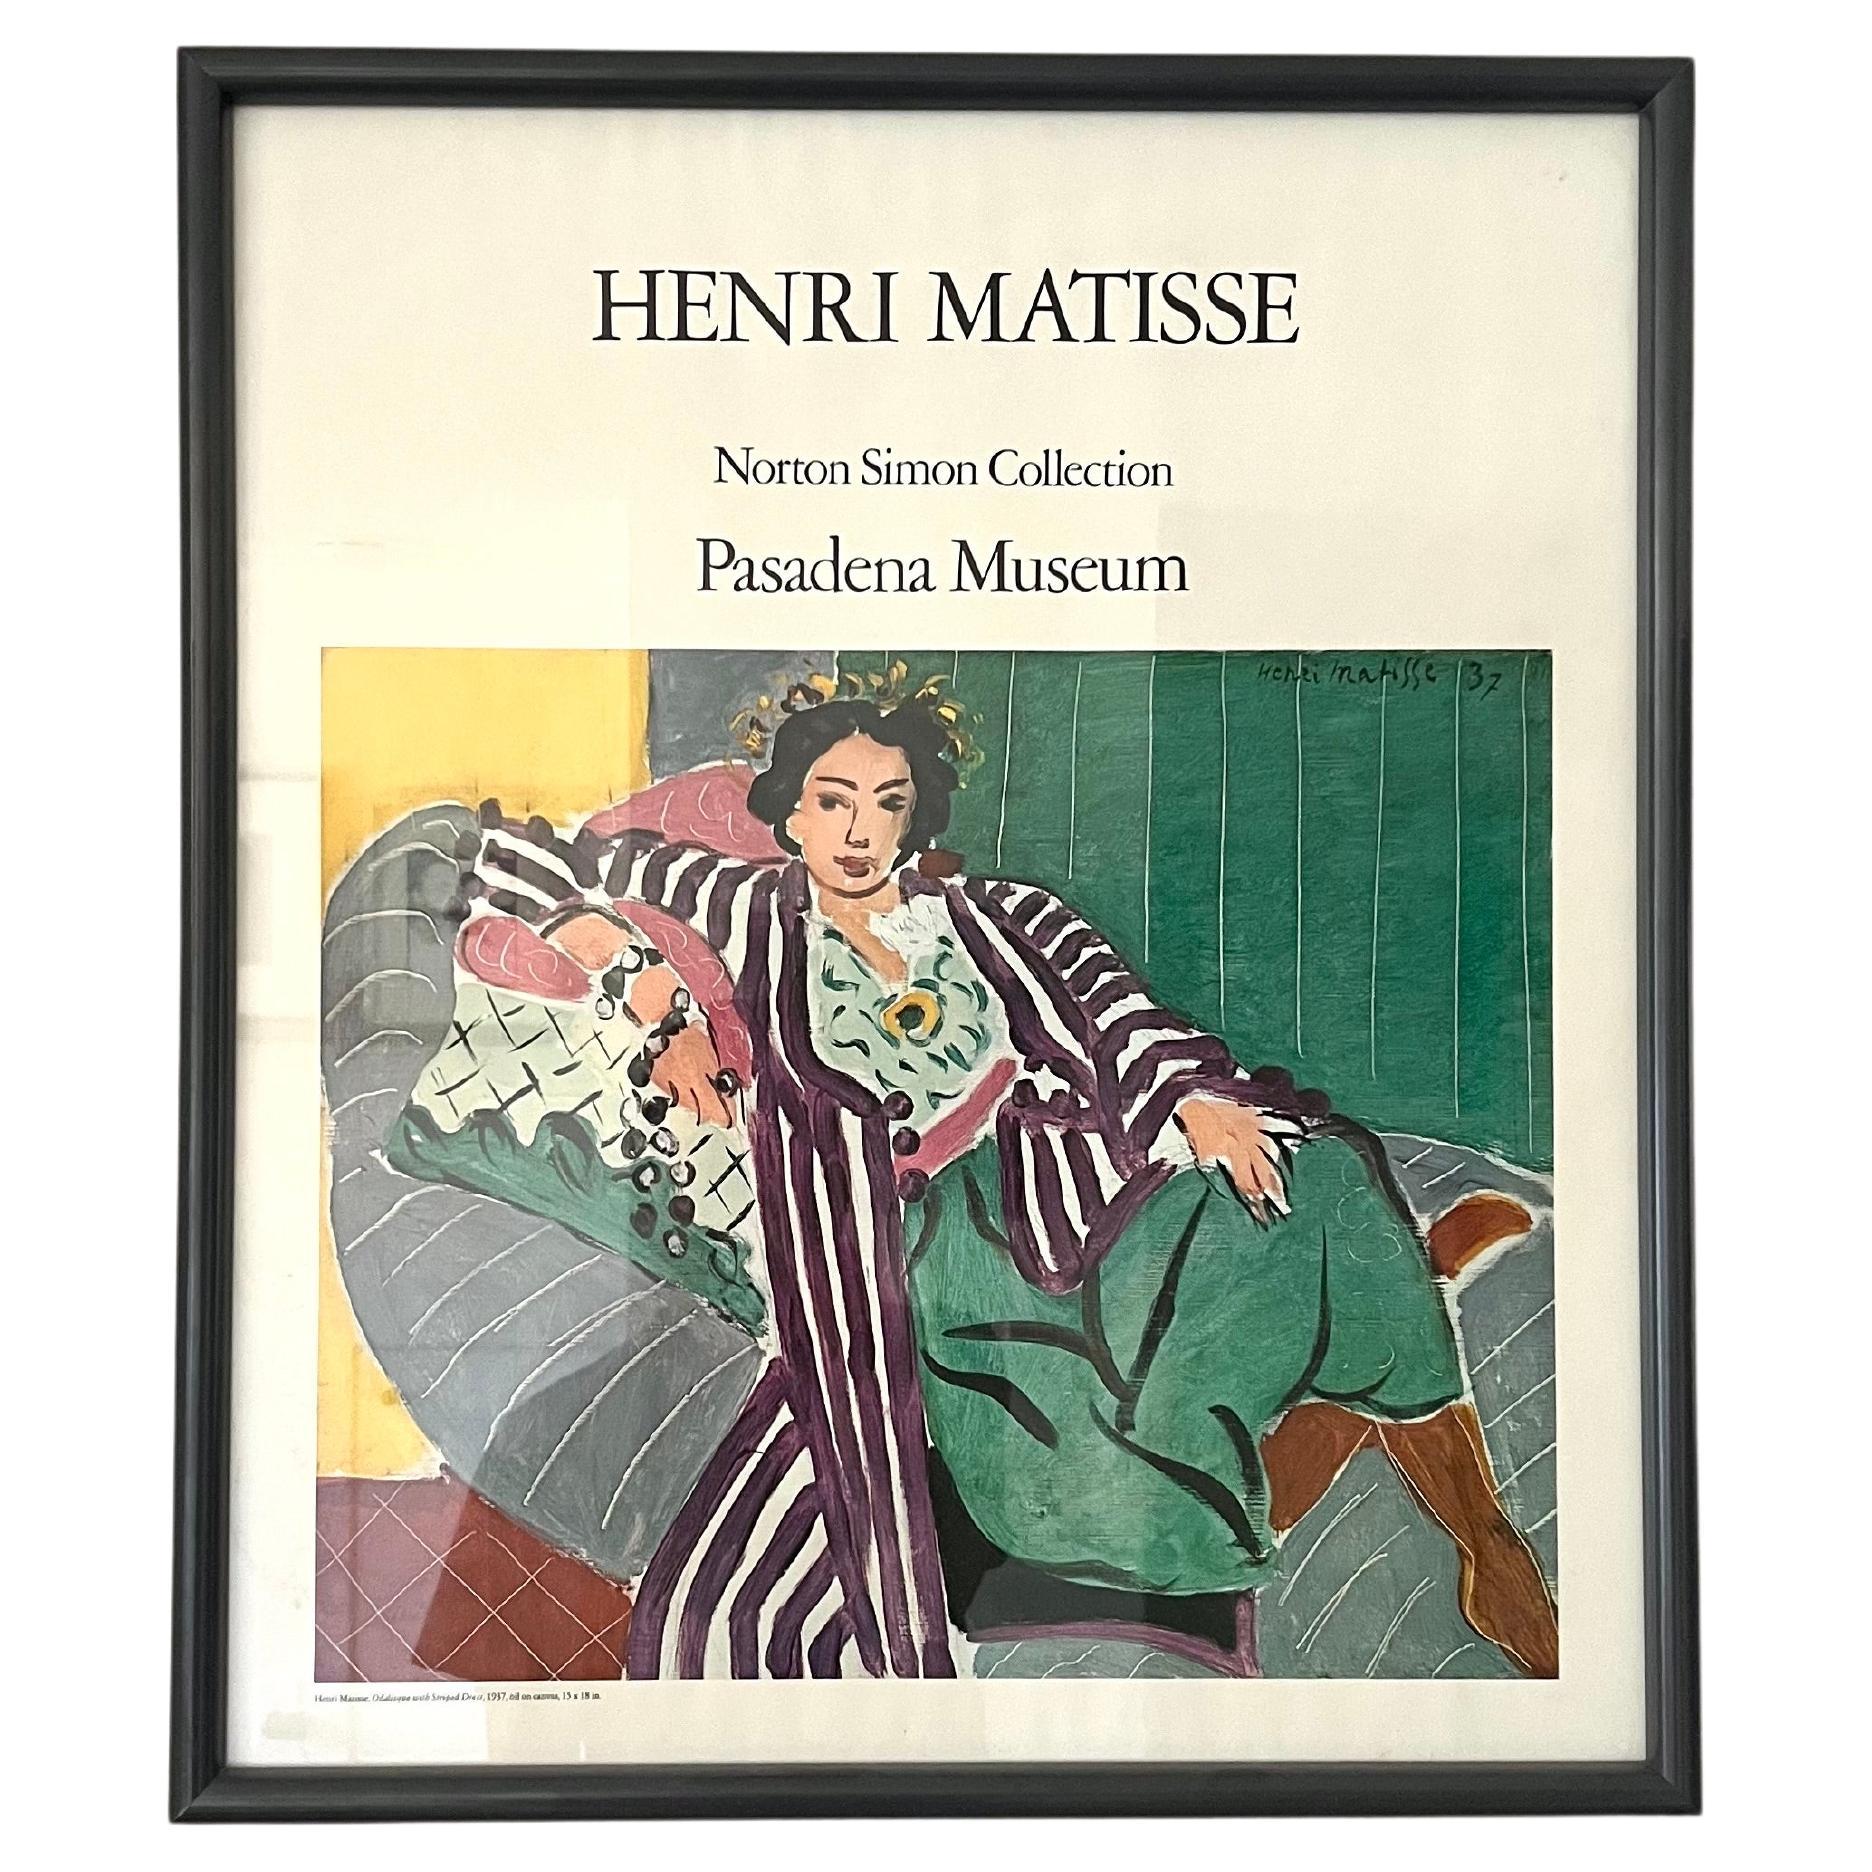 Affiche du Musée Pasadena d'Henri Matisse Norton Simon 